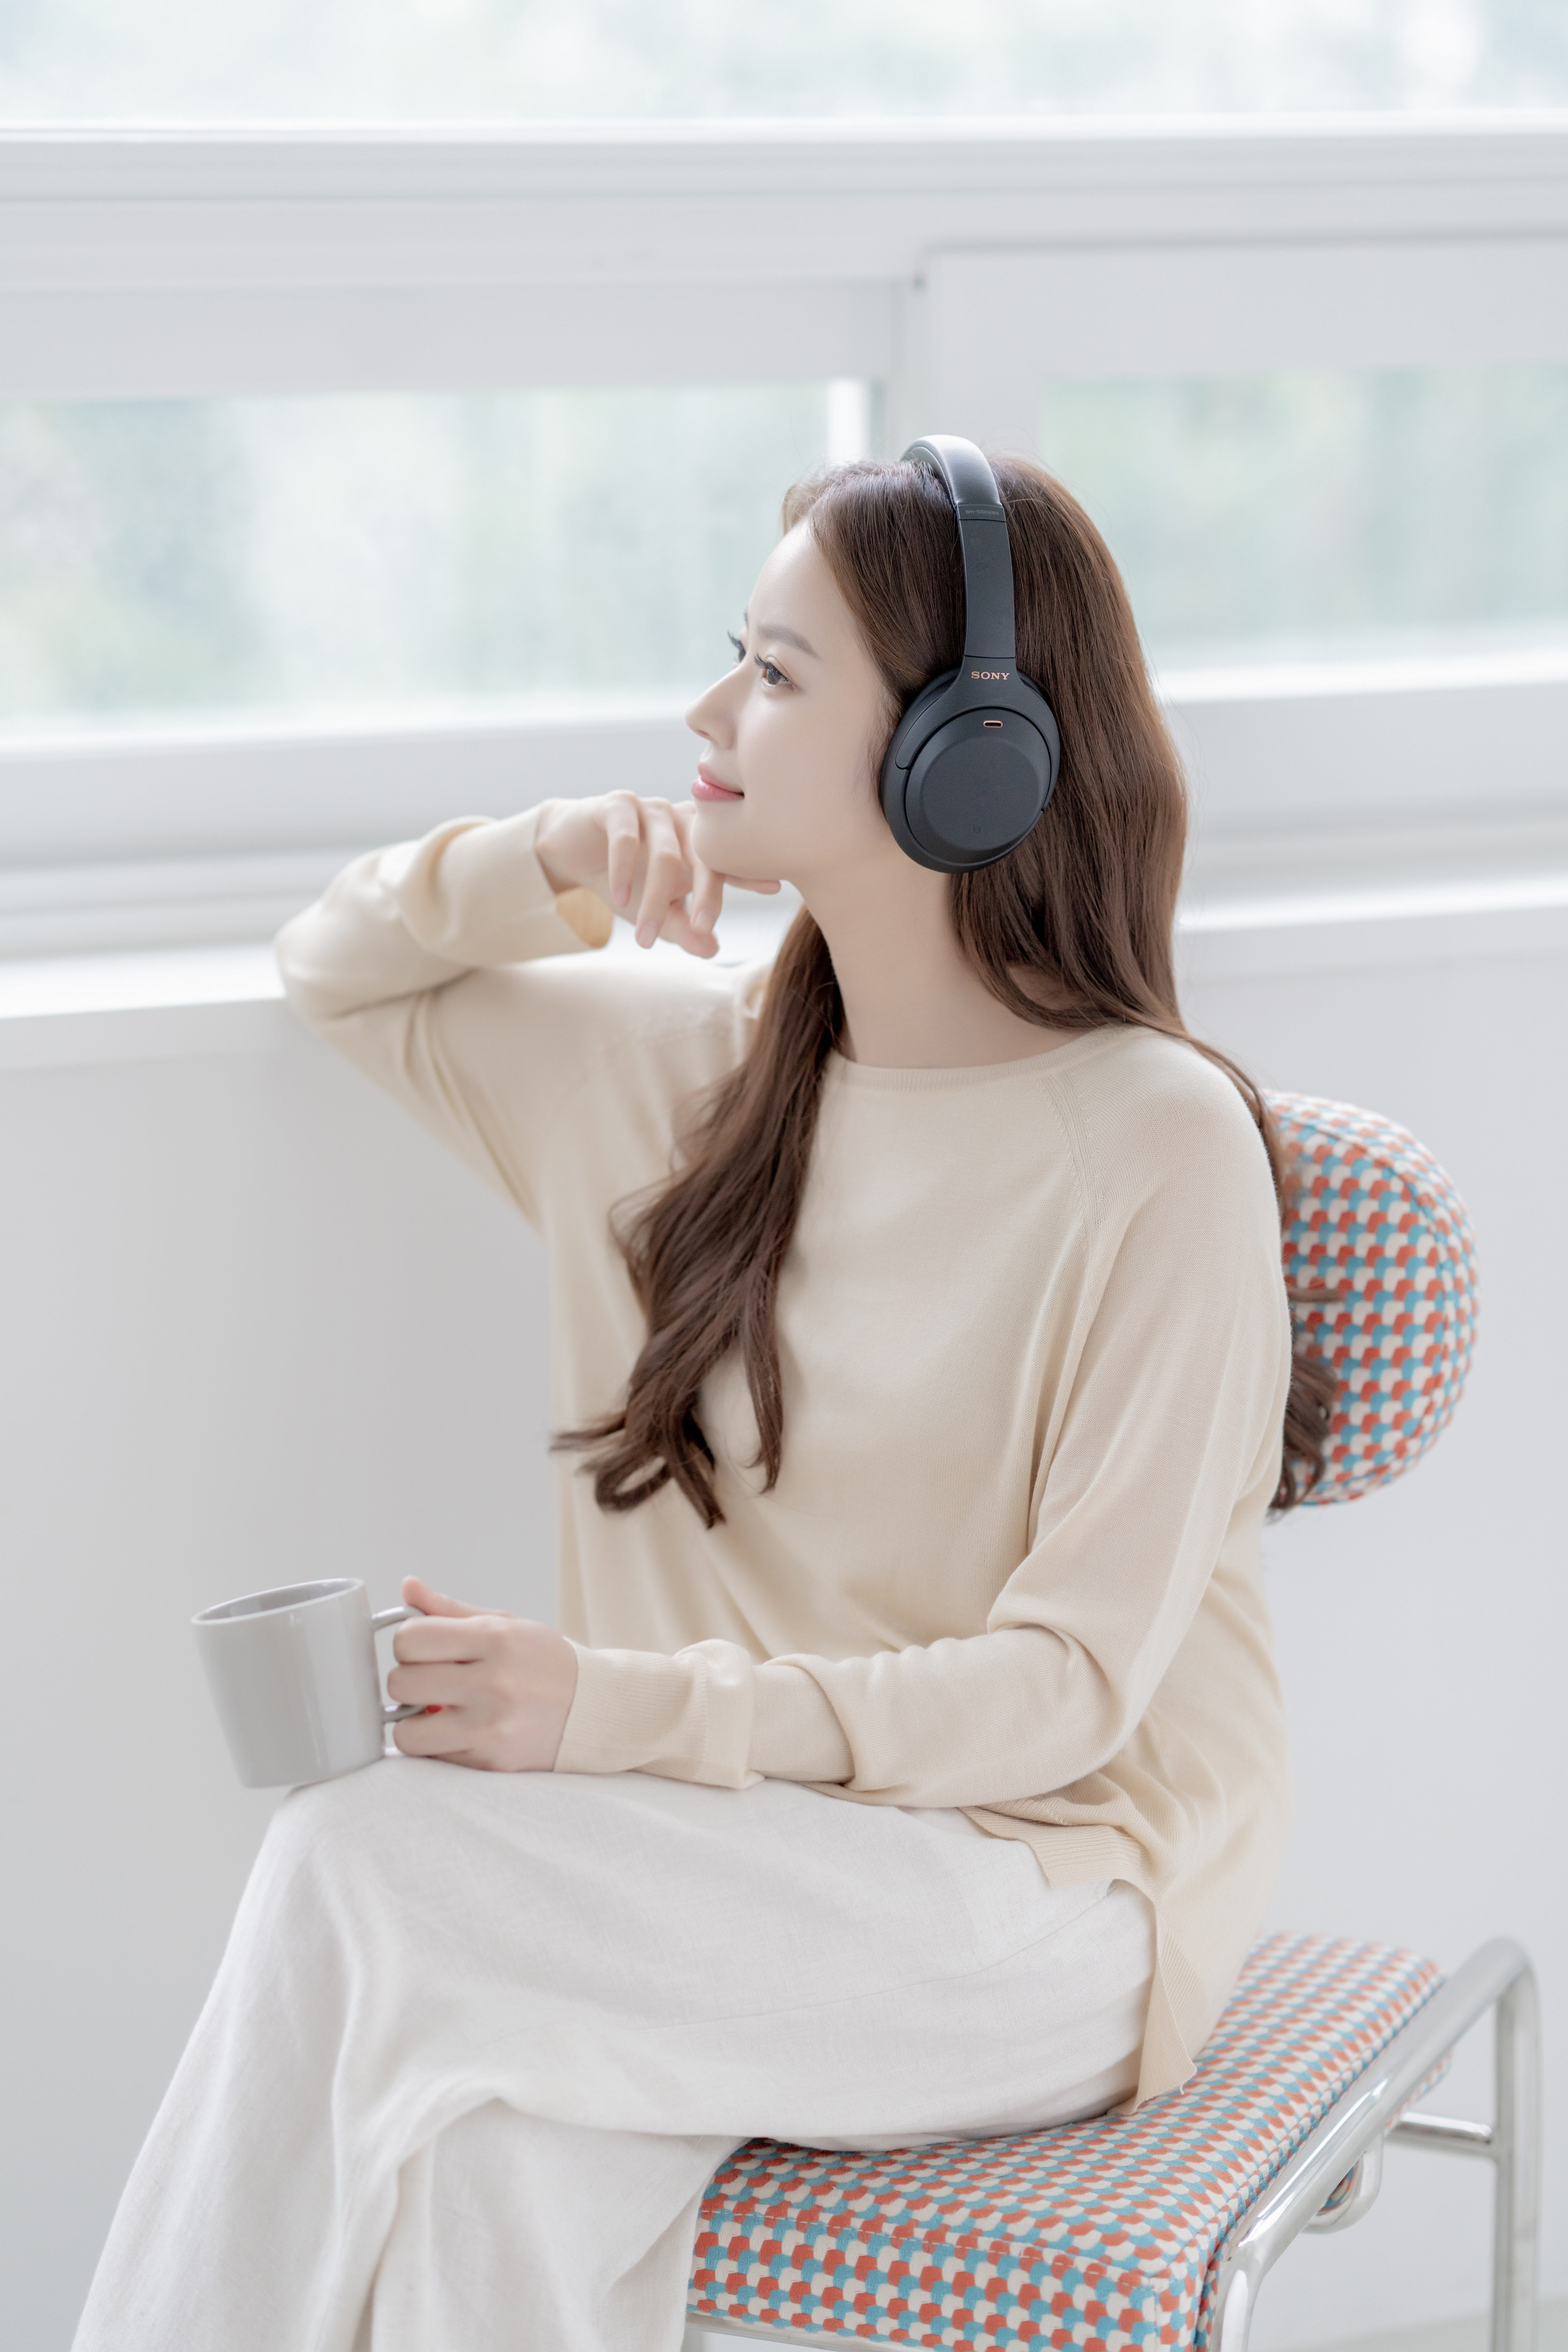 소니 무선 헤드폰 WH-1000XM4으로 음악을 감상하는 모습